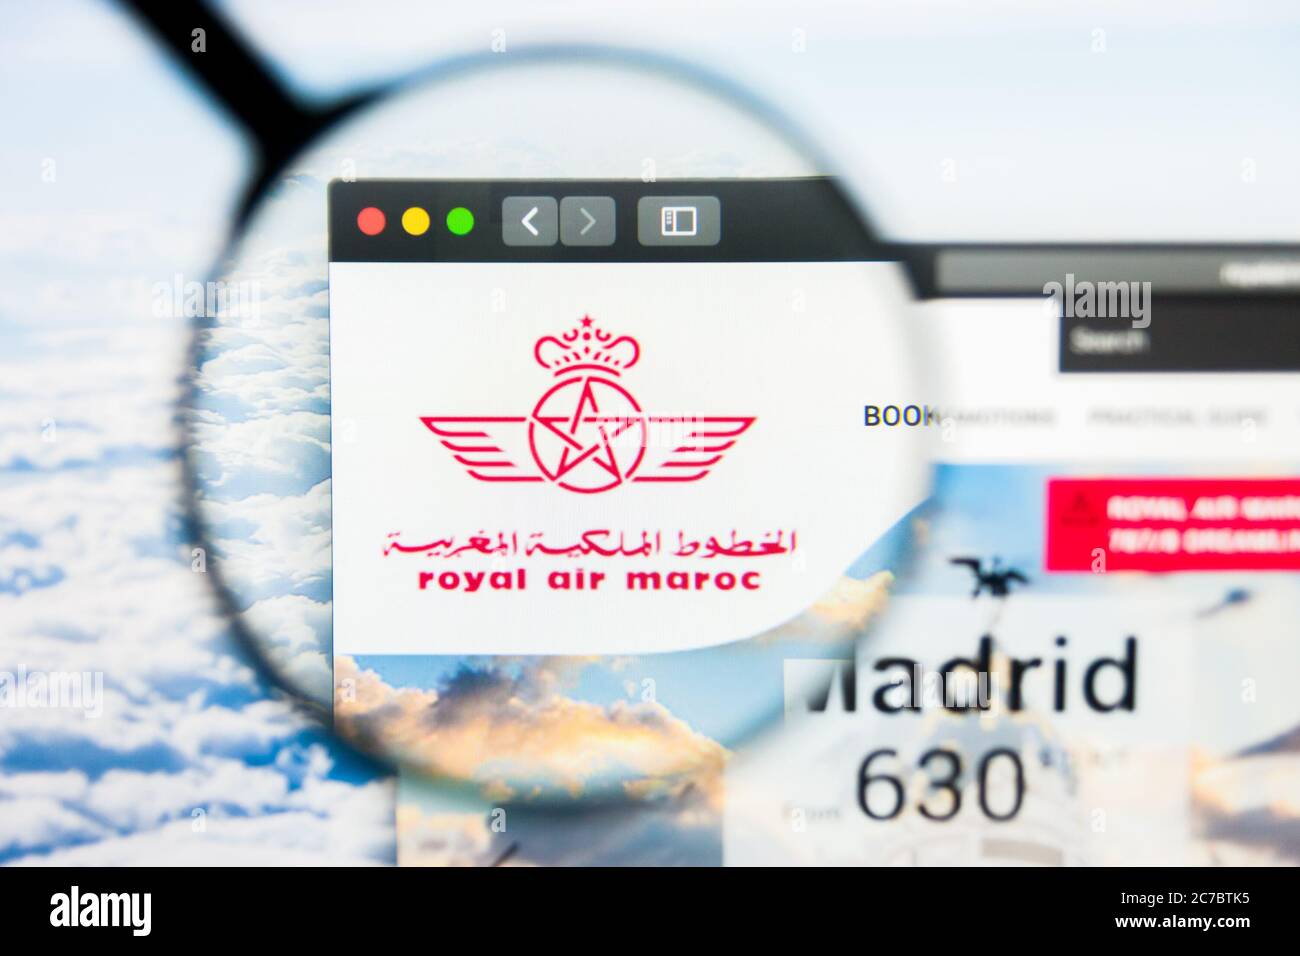 Los Angeles, Kalifornien, USA - 21. März 2019: Illustrative Editorial der Homepage von Royal Air Maroc. Royal Air Maroc-Logo auf dem Display sichtbar Stockfoto